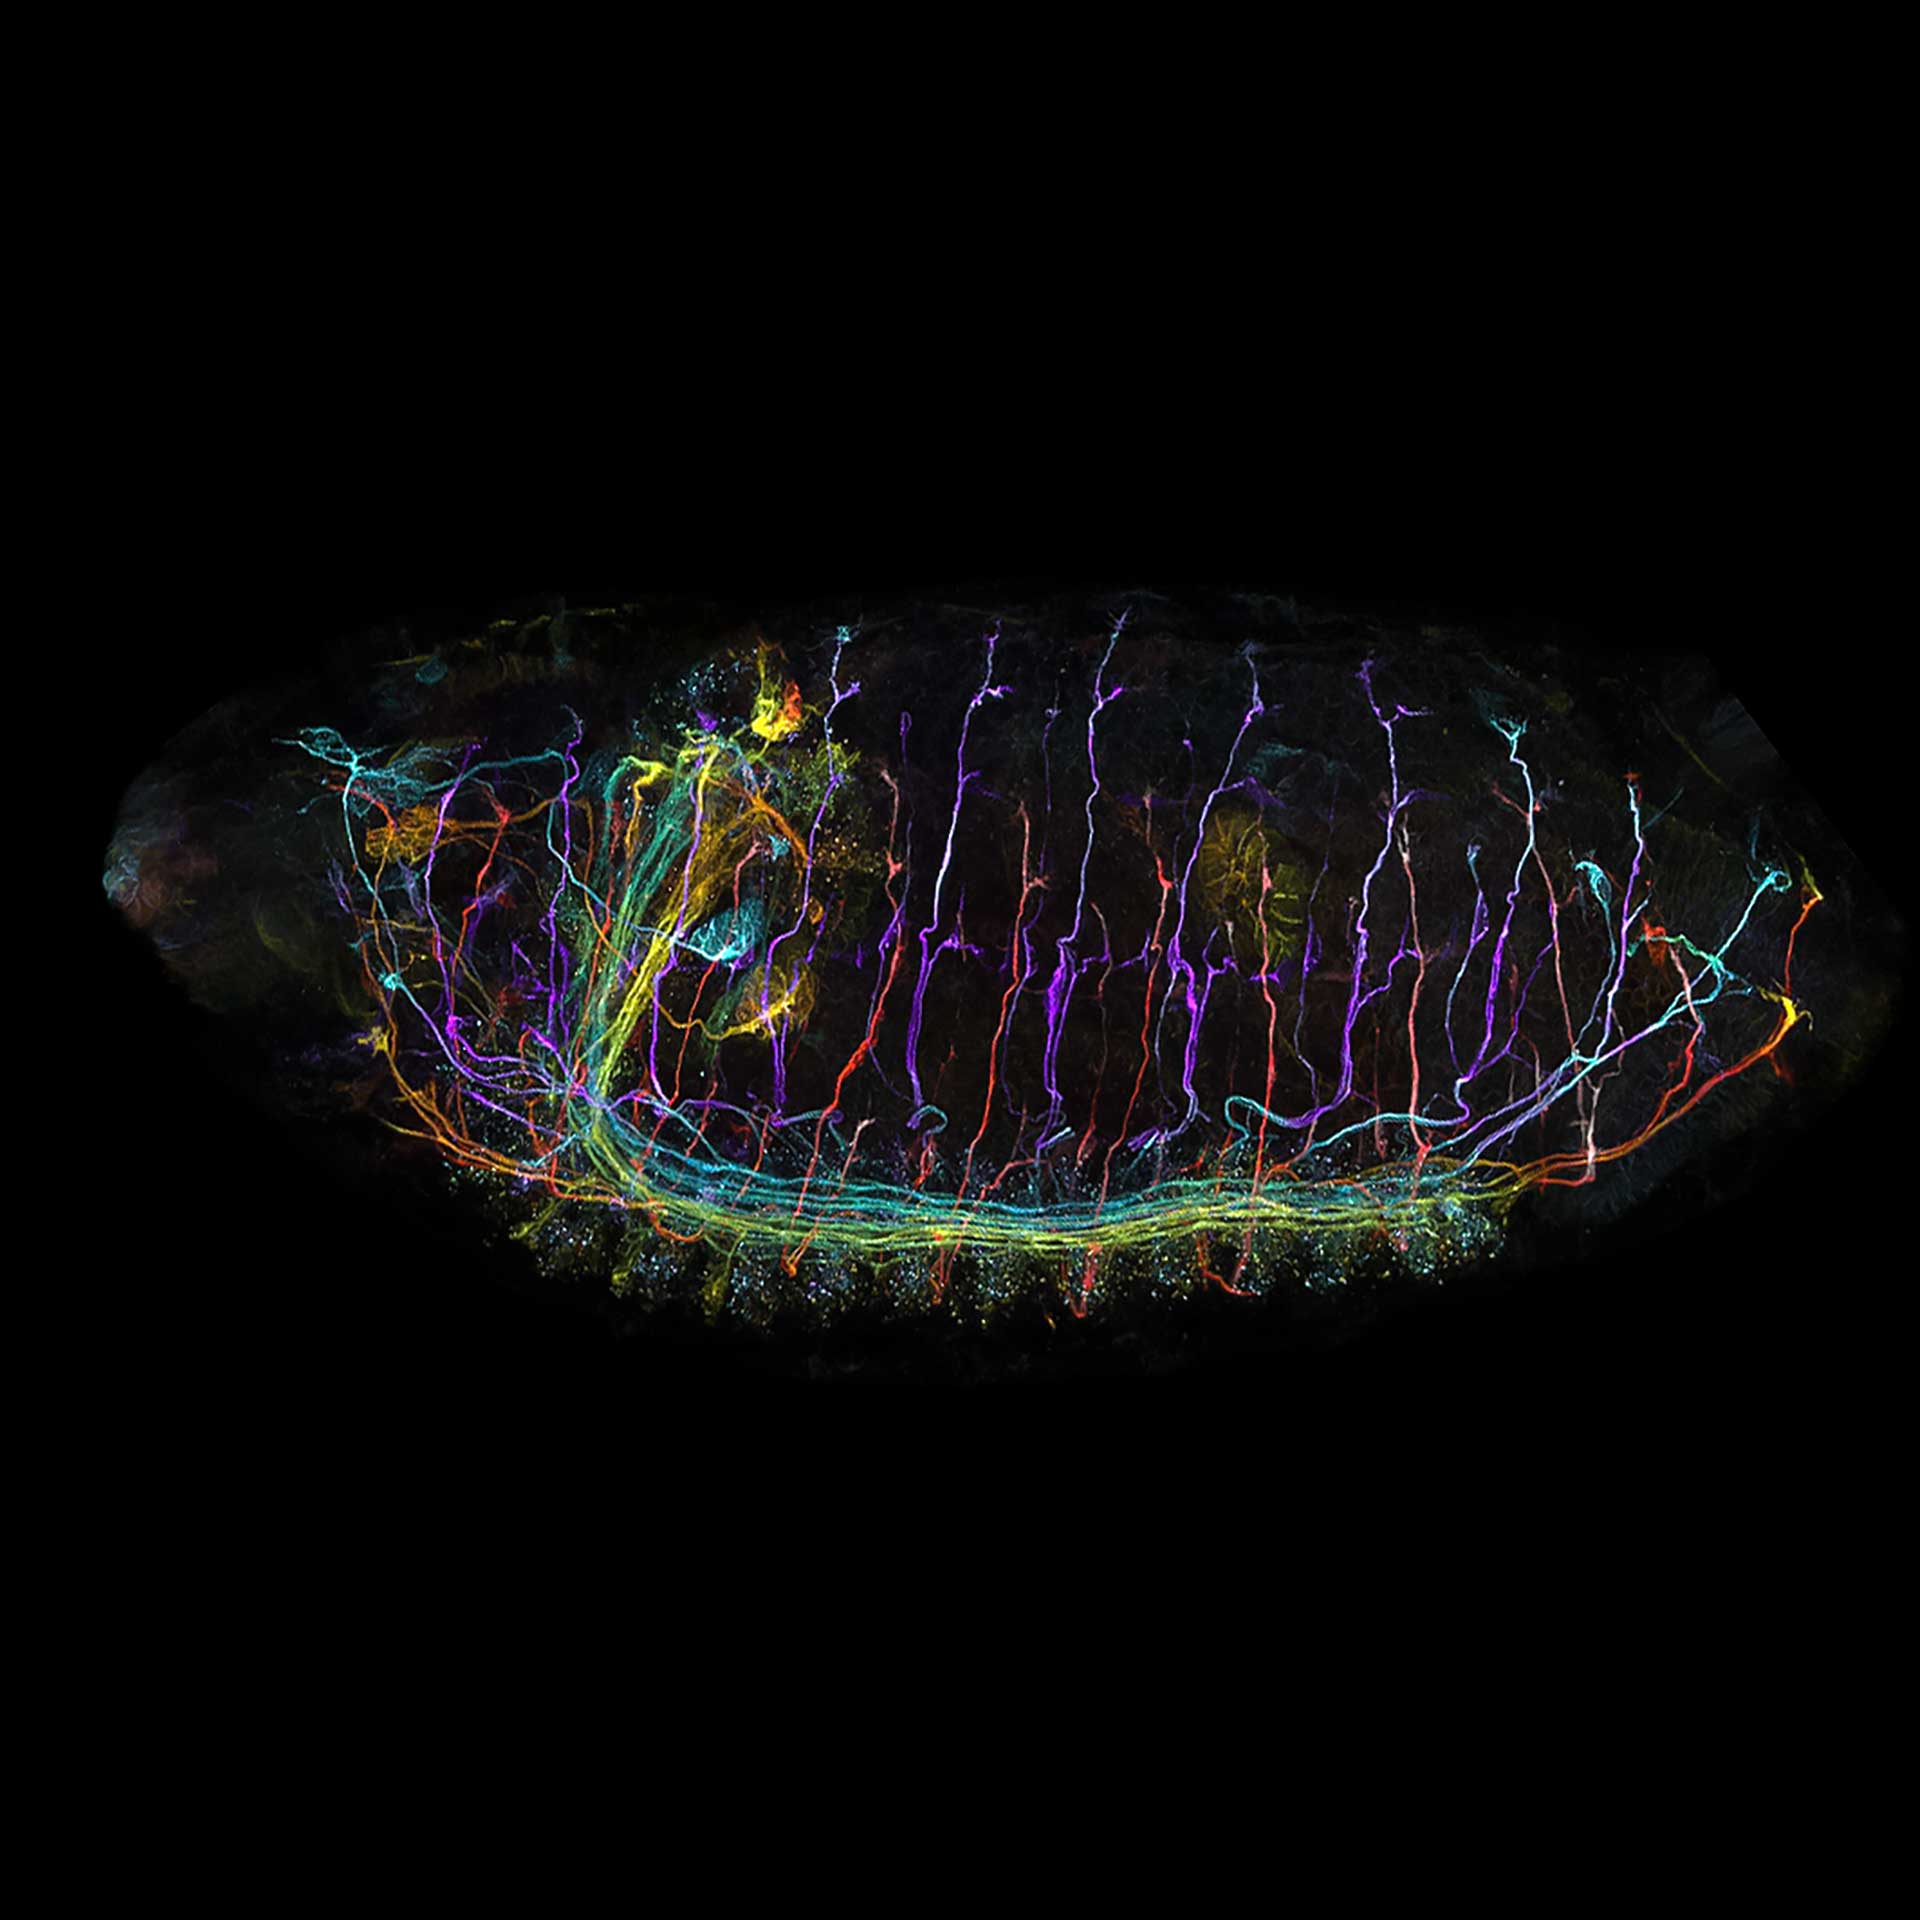 果蝇胚胎，使用Airyscan Multiplex模式成像。样品由德国波恩大学生命和医学科学研究所（LIMES）的J. Sellin提供